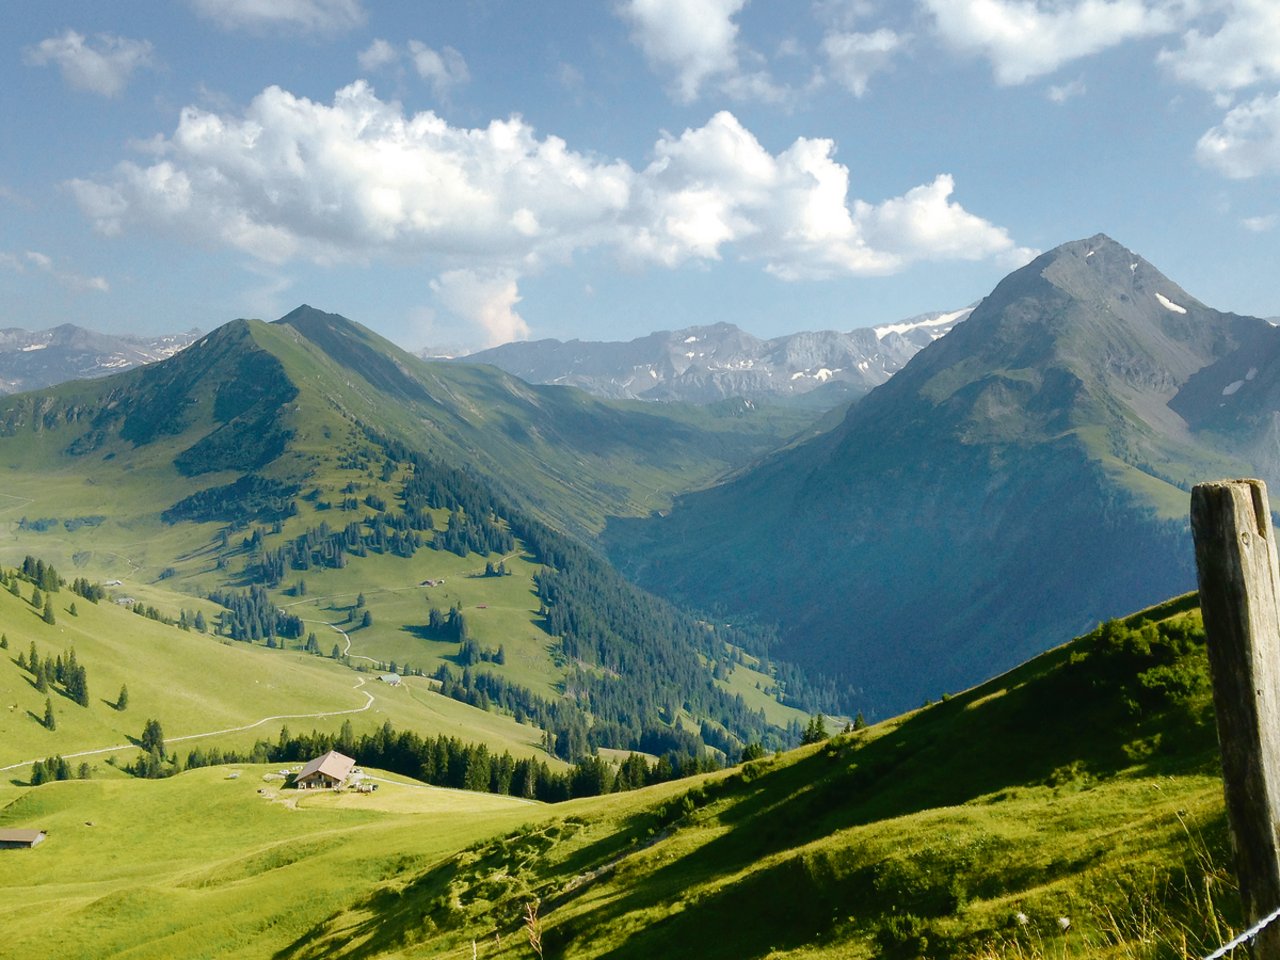 Von der Alp hat man einen schönen Weitblick über das Tal.